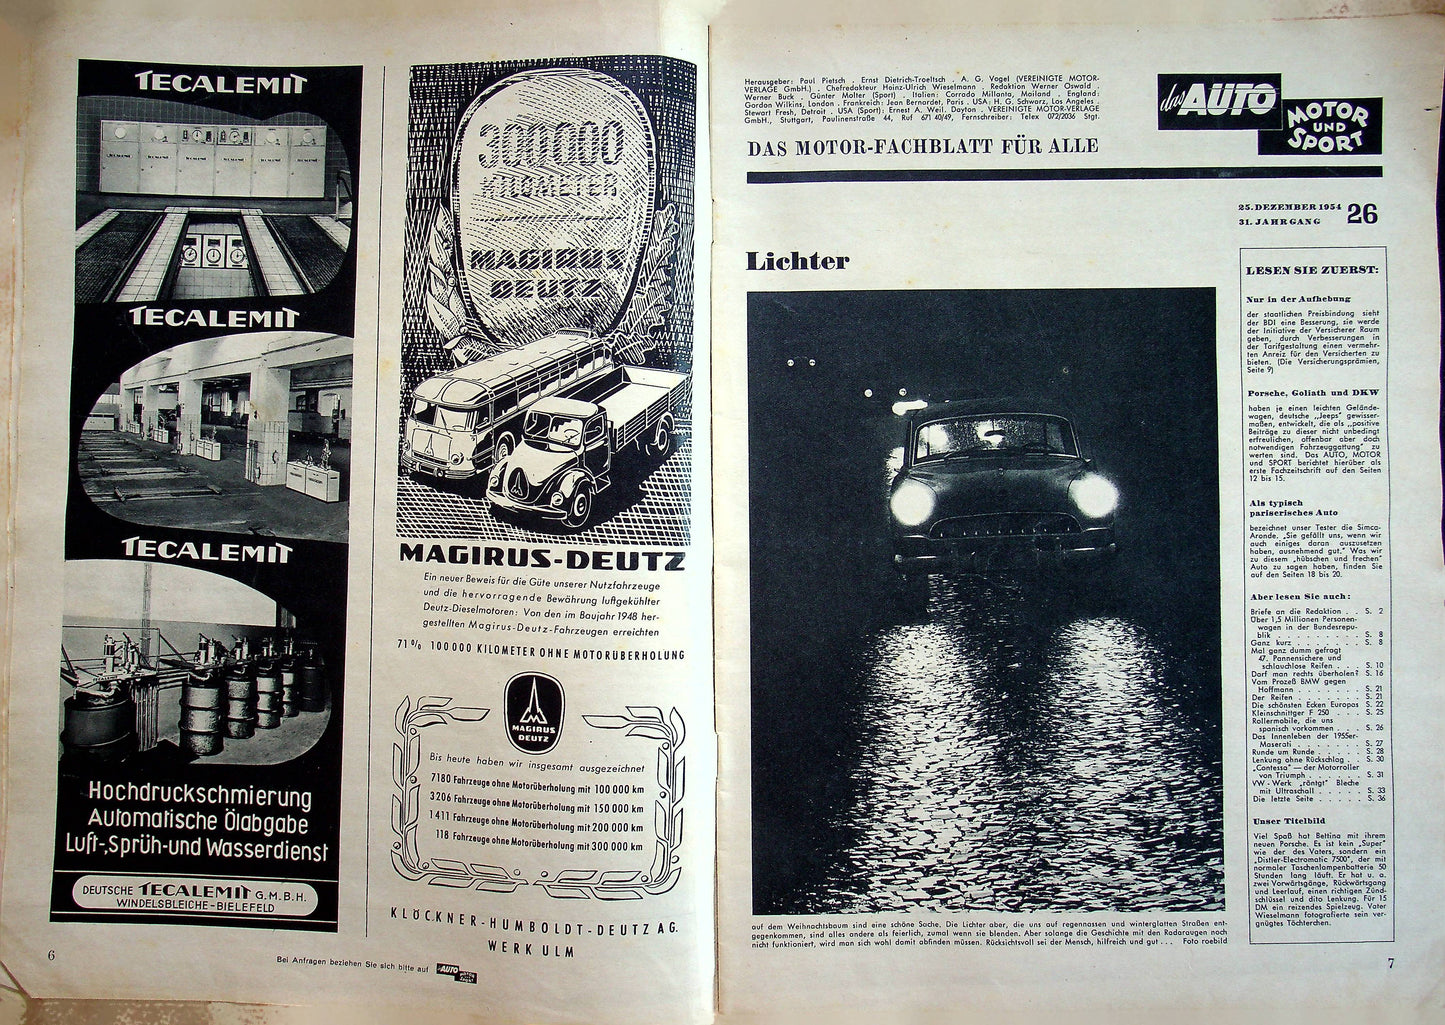 Auto Motor und Sport 26/1954